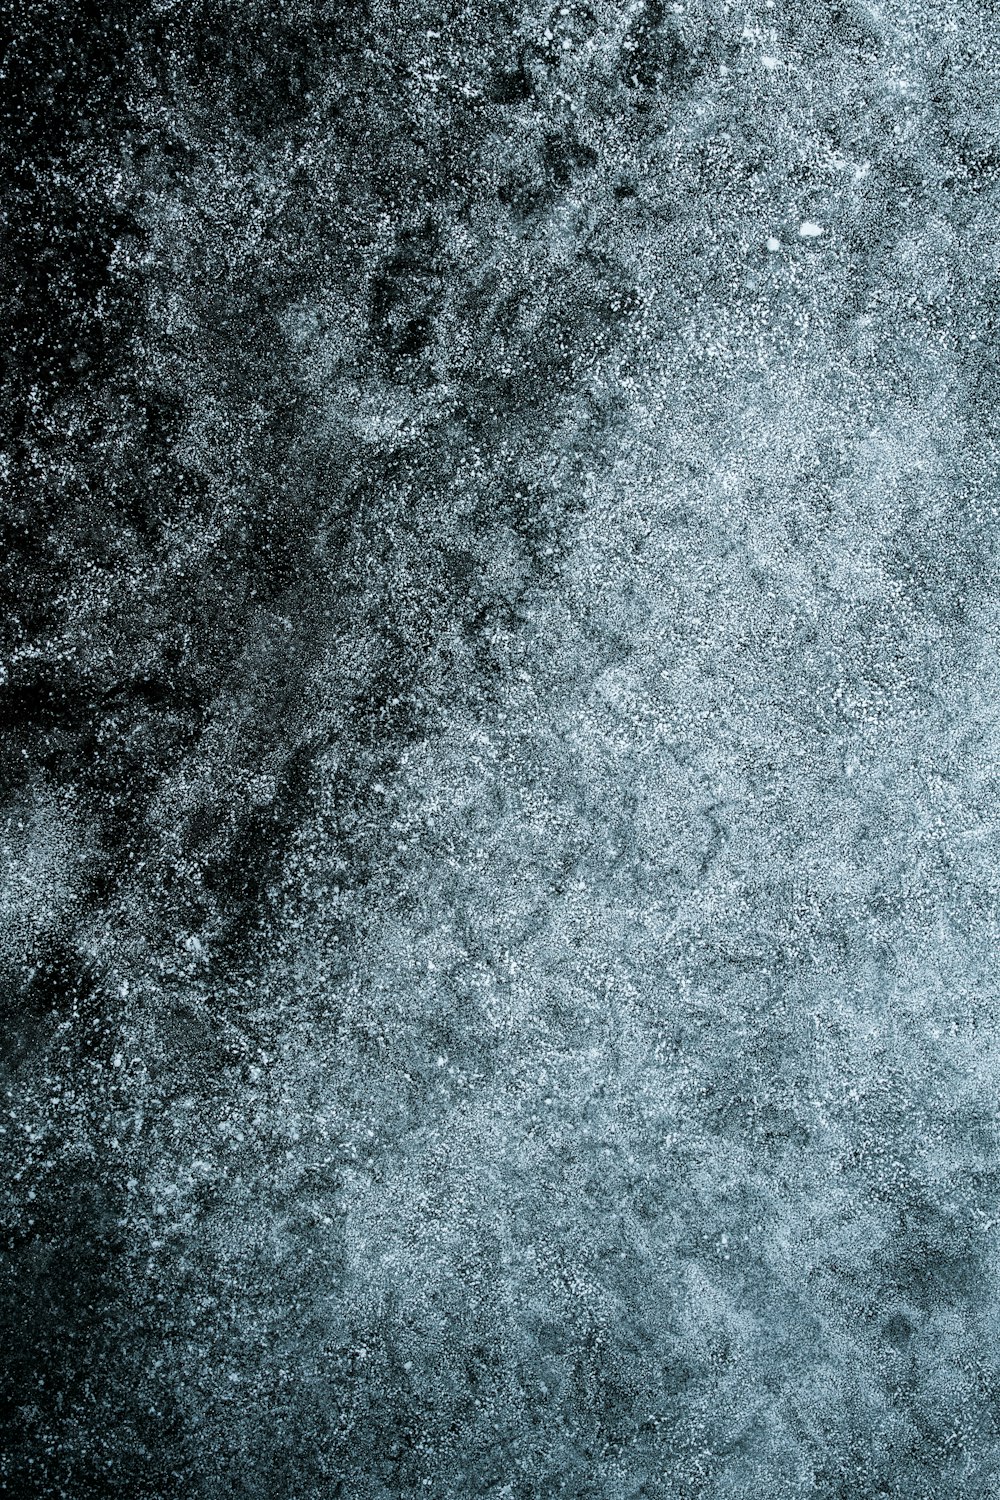 Una foto en blanco y negro de nieve en el suelo